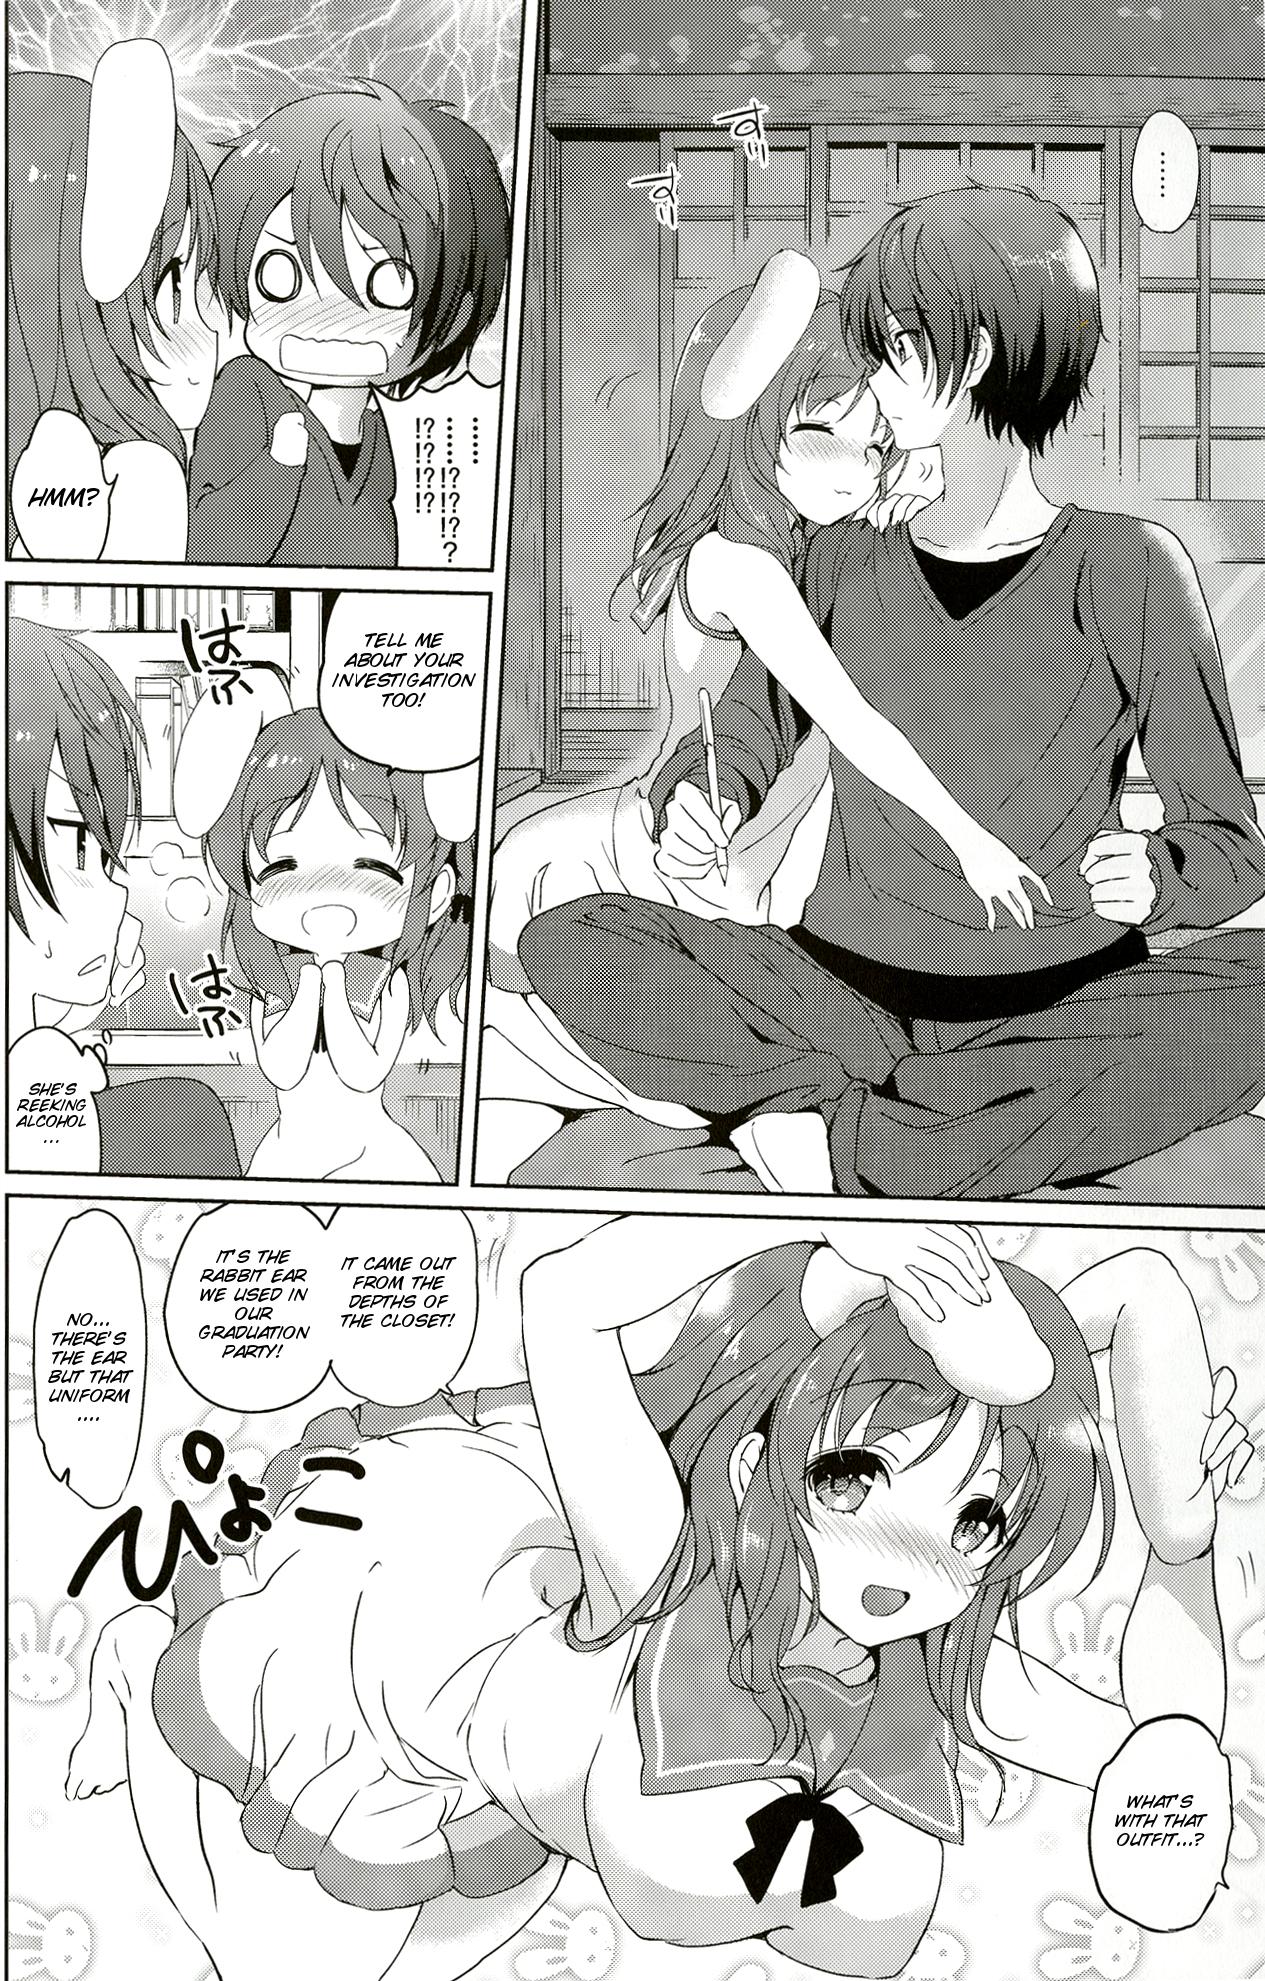 Striptease Horoyoi Rabbit - Nagi no asukara Doggystyle Porn - Page 5